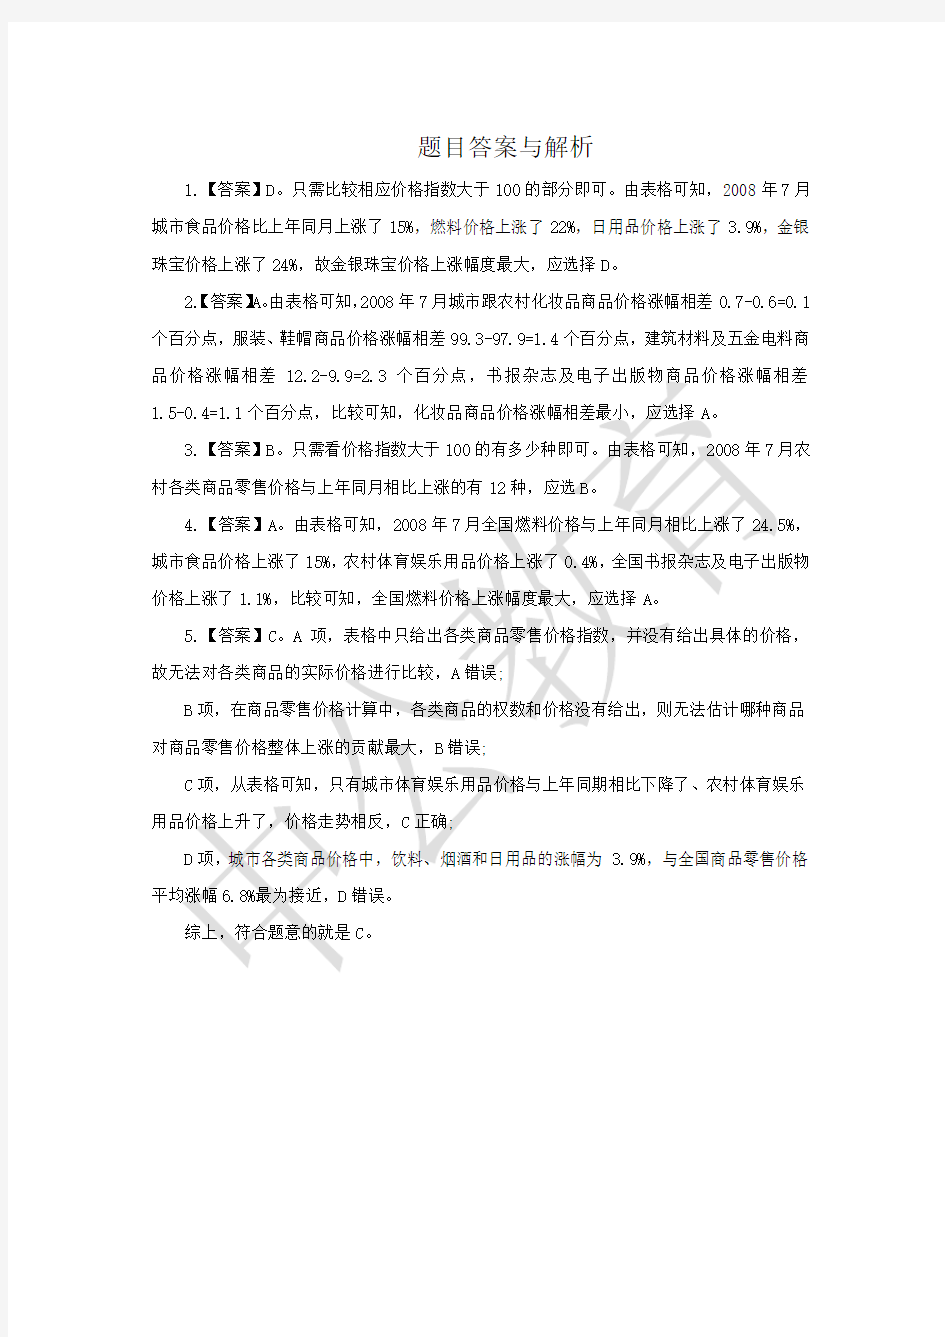 2019广州事业单位考试行测资料分析练习题一(12.09)